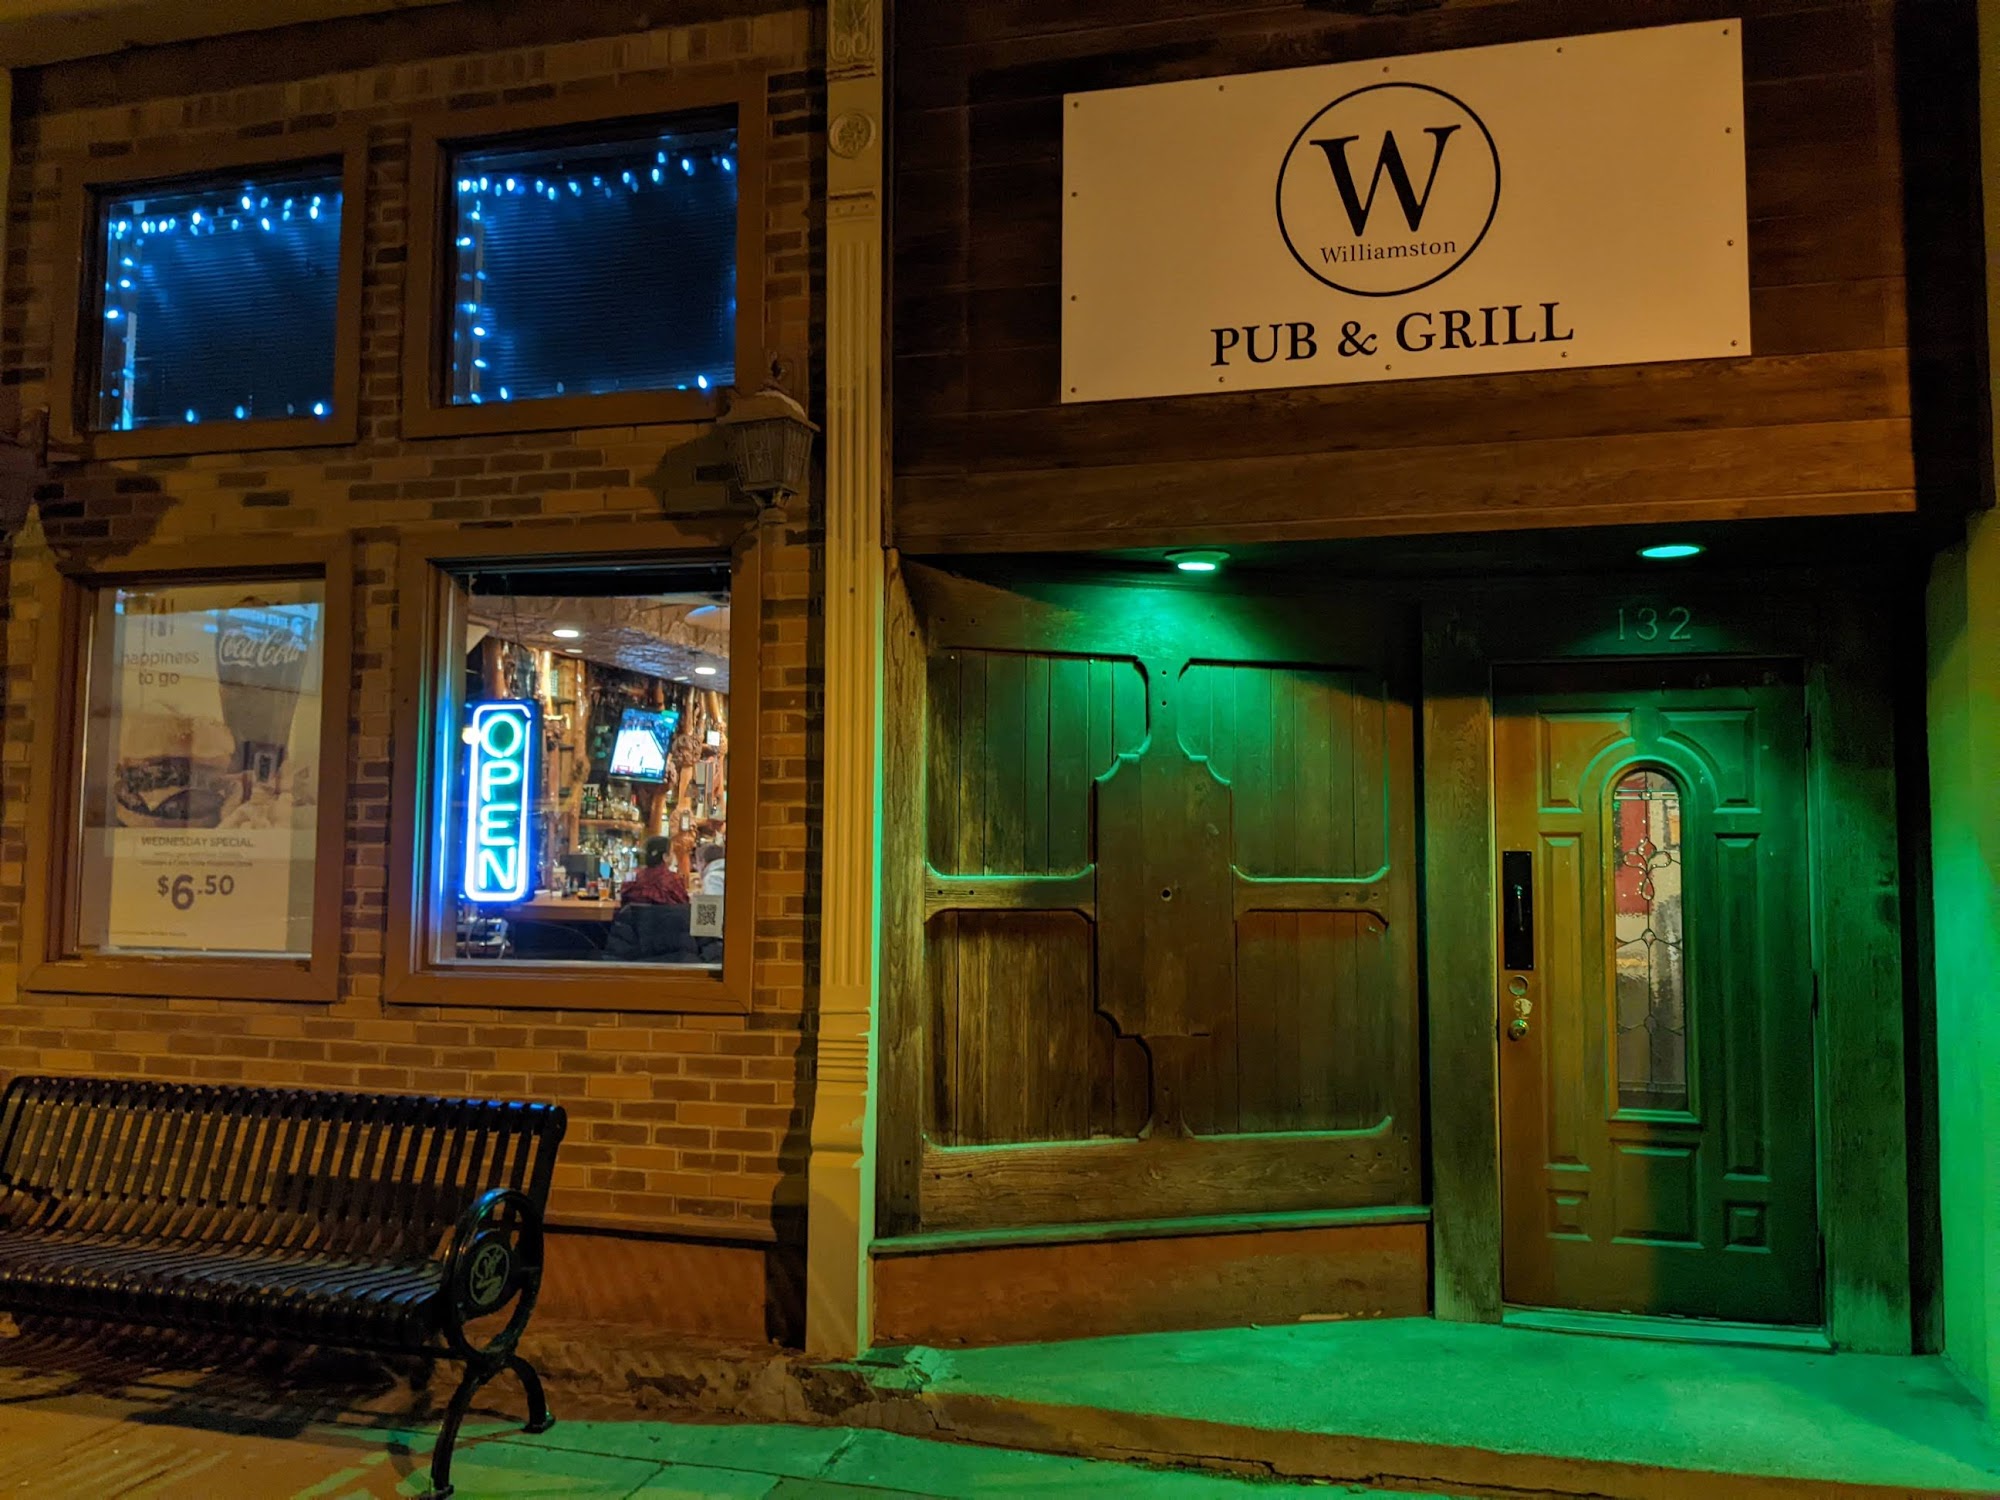 Williamston Pub & Grill